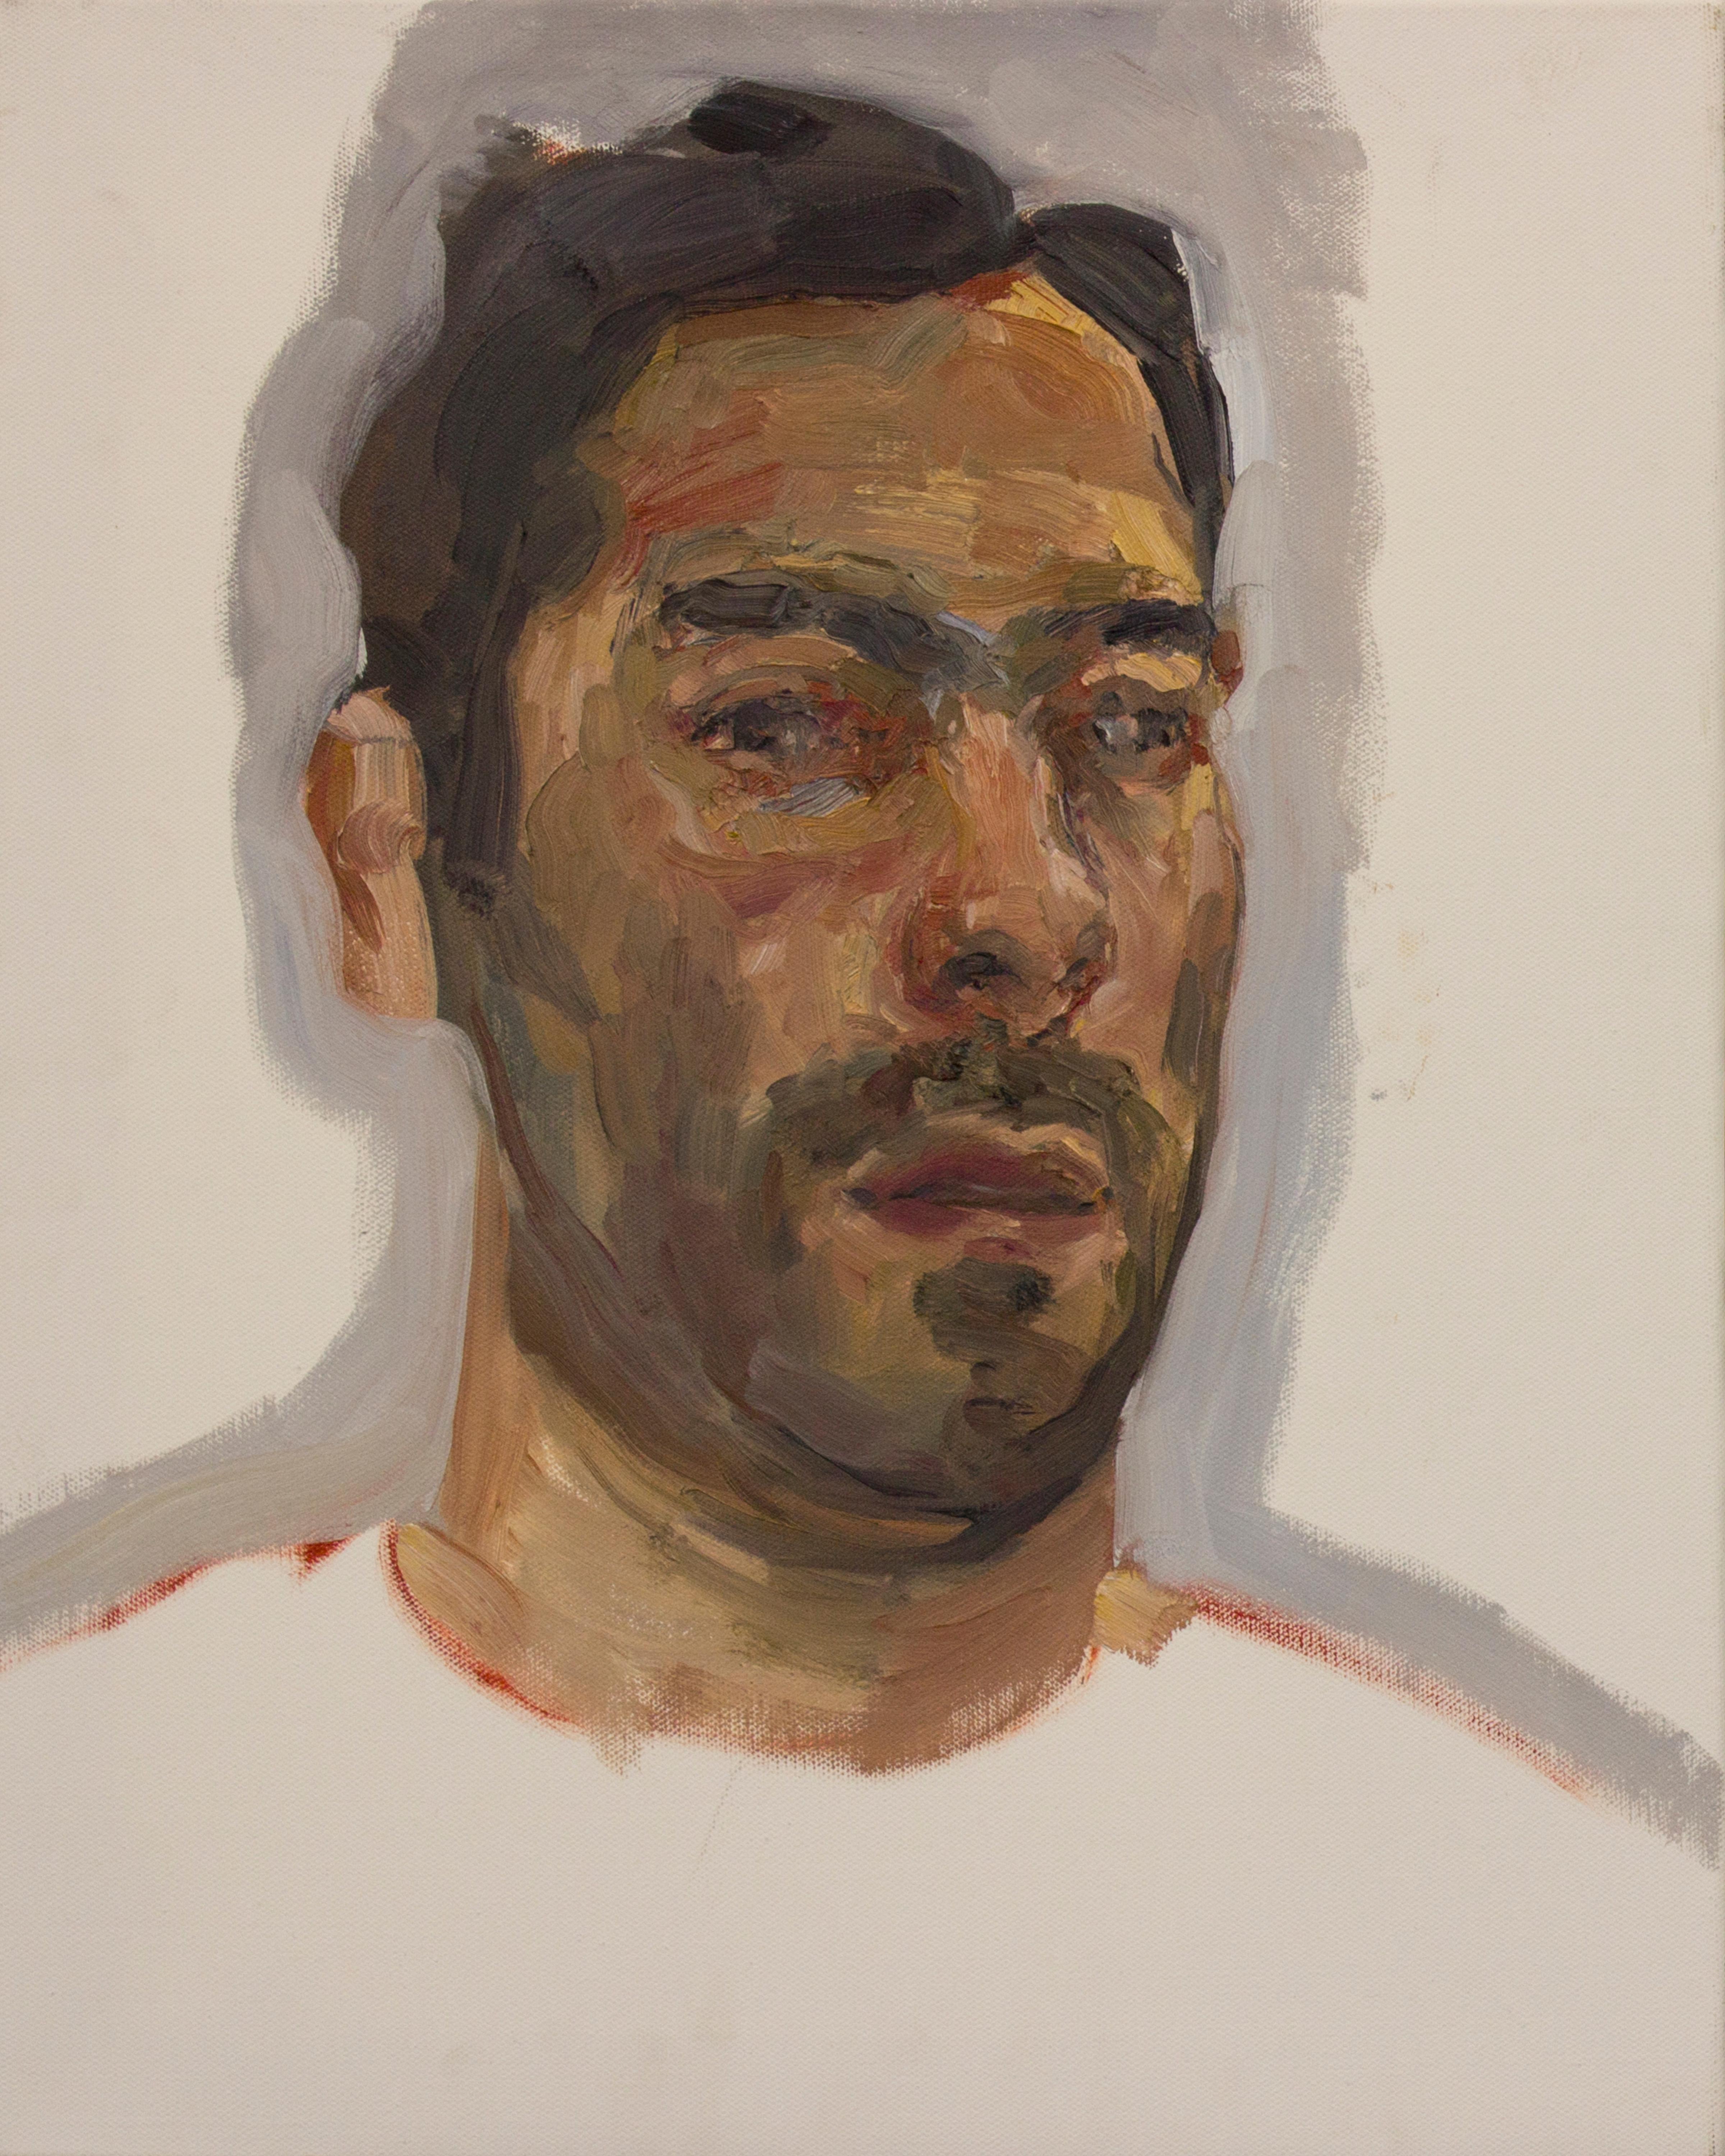 Dieses Werk ist Esteban Ocampo-Giraldo, Selfie Painted With Dead Palette, 2016, Öl auf Leinwand, 20 x 16 Zoll. Es ist Teil seiner Serie dynamischer Selbstporträts mit dem treffenden Titel "Selfies". Diese Werke, die in einer einzigen Sitzung mit